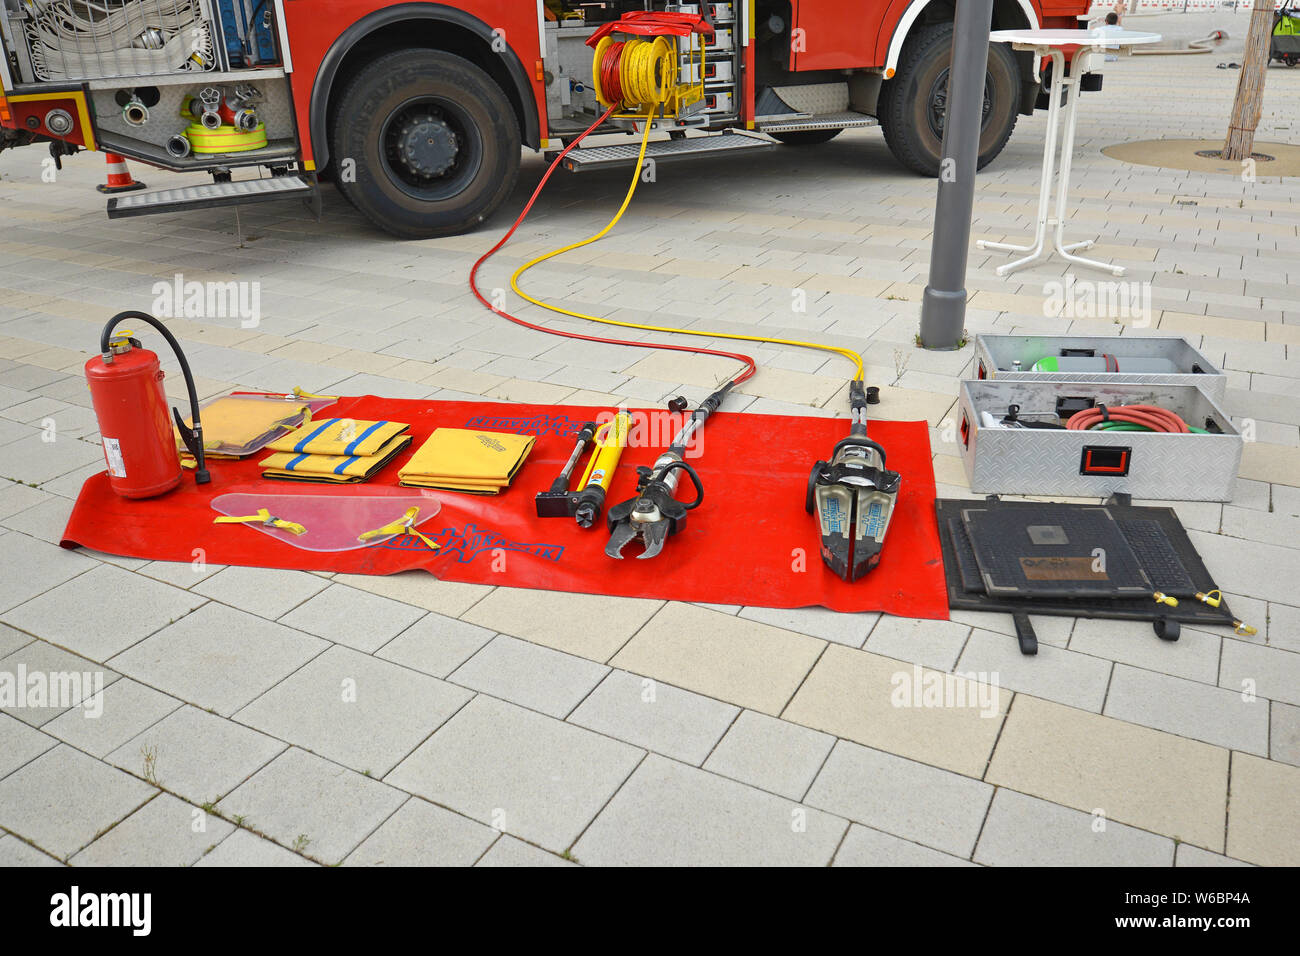 Tools wie Brandbekämpfung Löschmittel Decke, hydraulische Rettungs Cutter oder Feuerlöscher von fire truck auf Anzeige auf rot Decke auf dem Boden Stockfoto